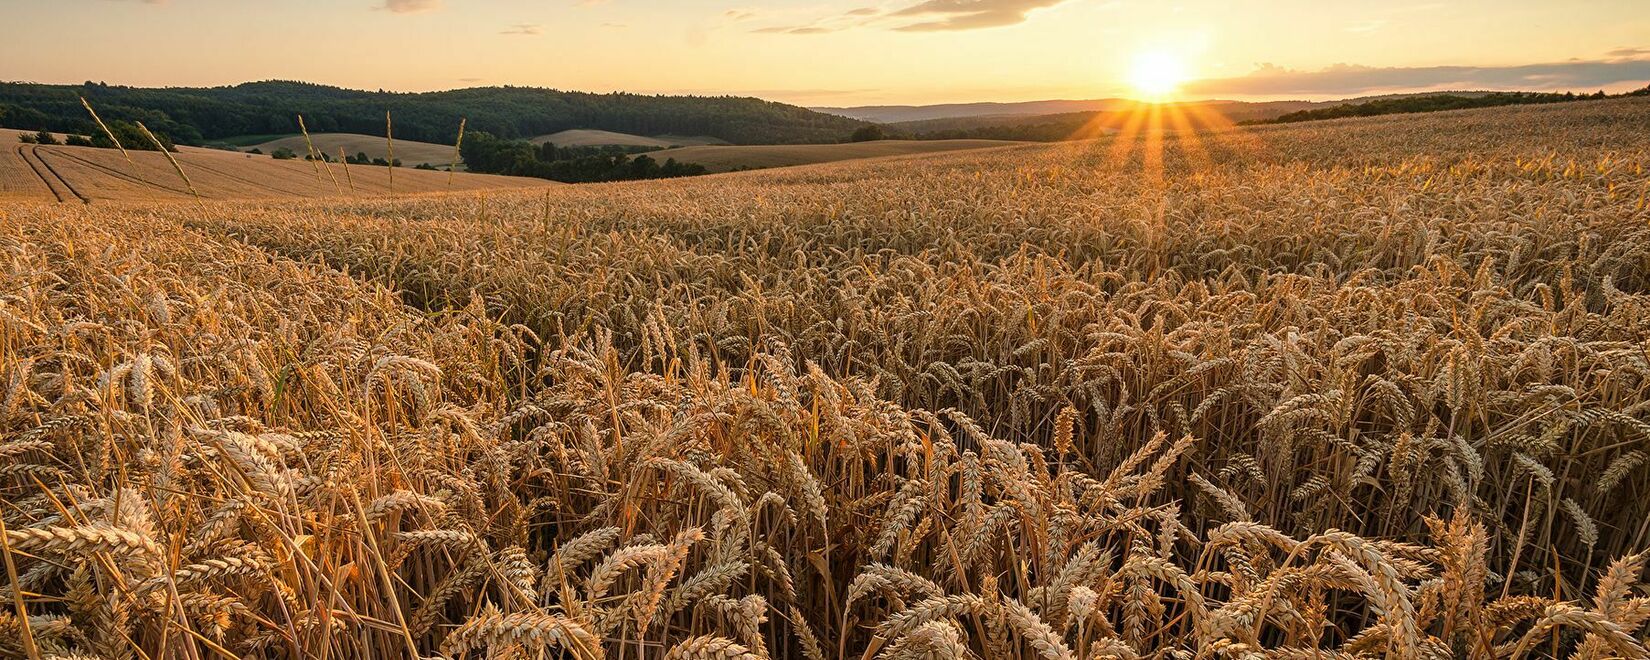 Котировки пшеницы на Euronext повышены благодаря спросу и конкуренции